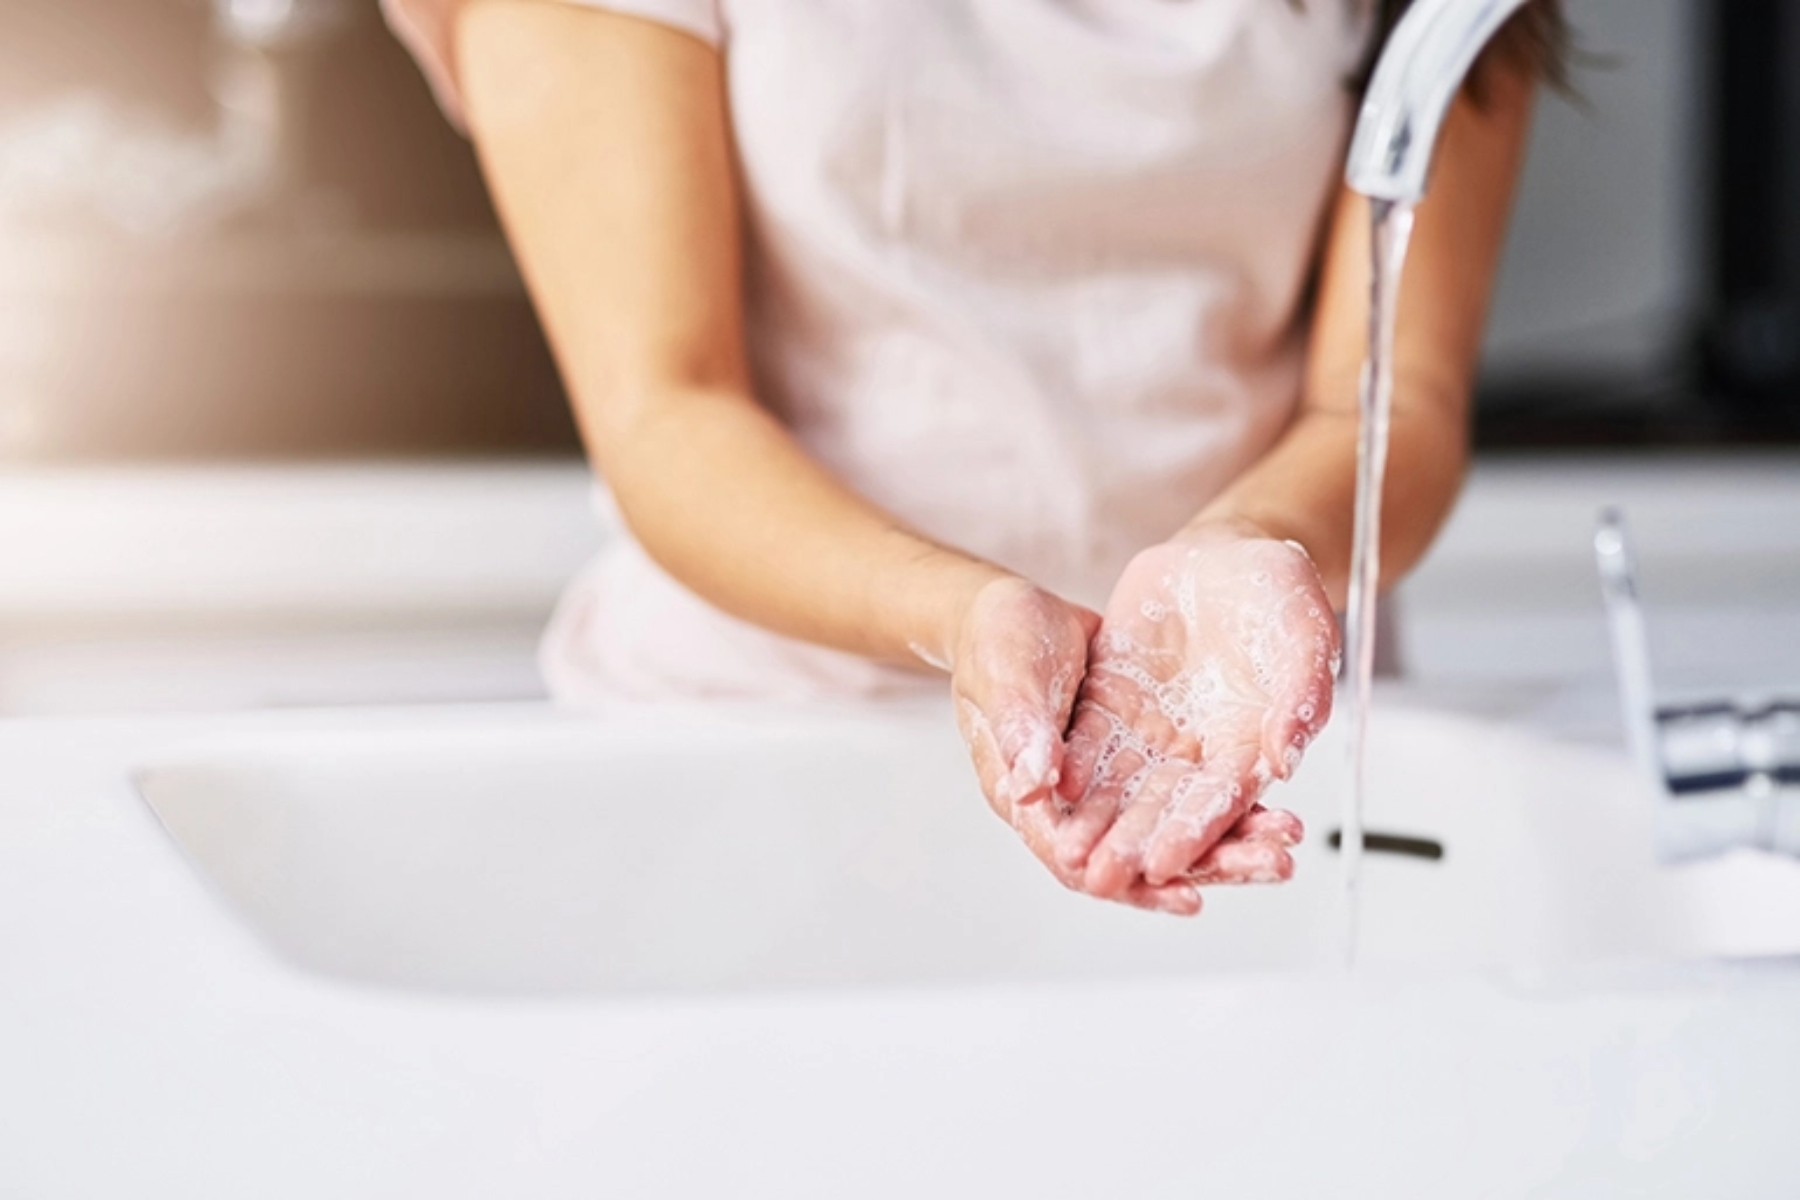 Πλύσιμο χεριών: Νέες οδηγίες εστιάζουν στα υγιή νύχια & την απολύμανση